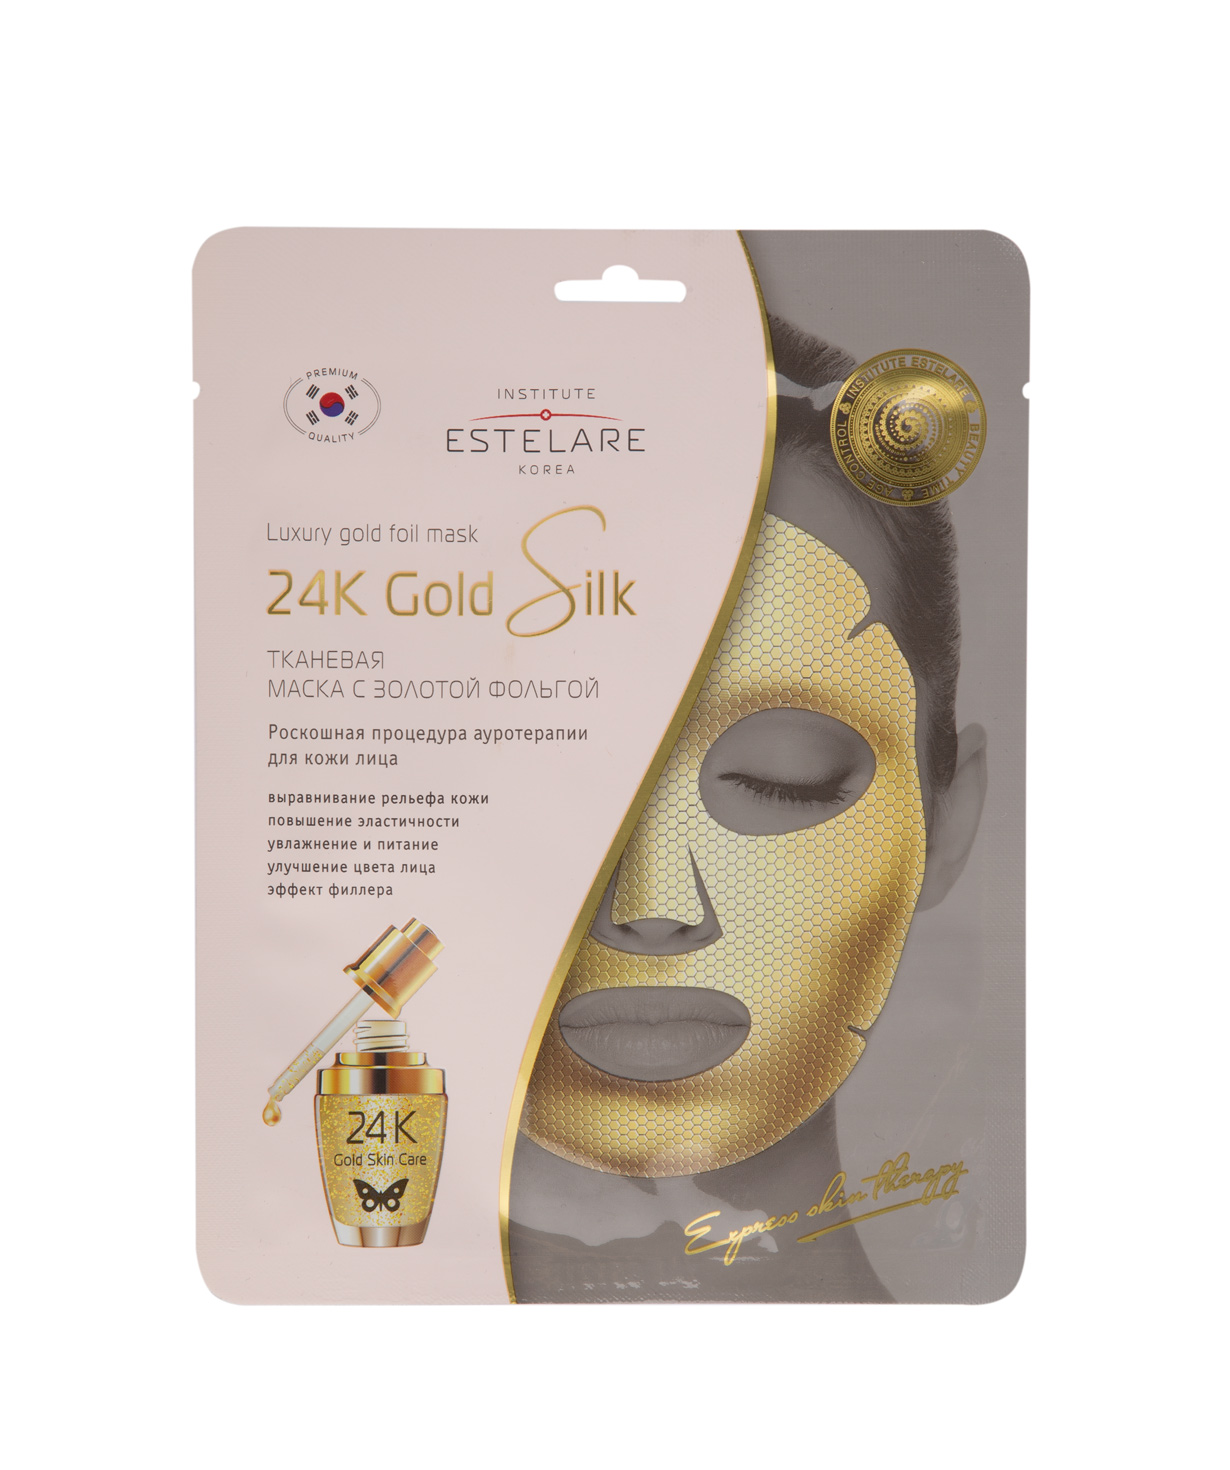 Коллекция `Estelare` тканевых масок  24К Gold